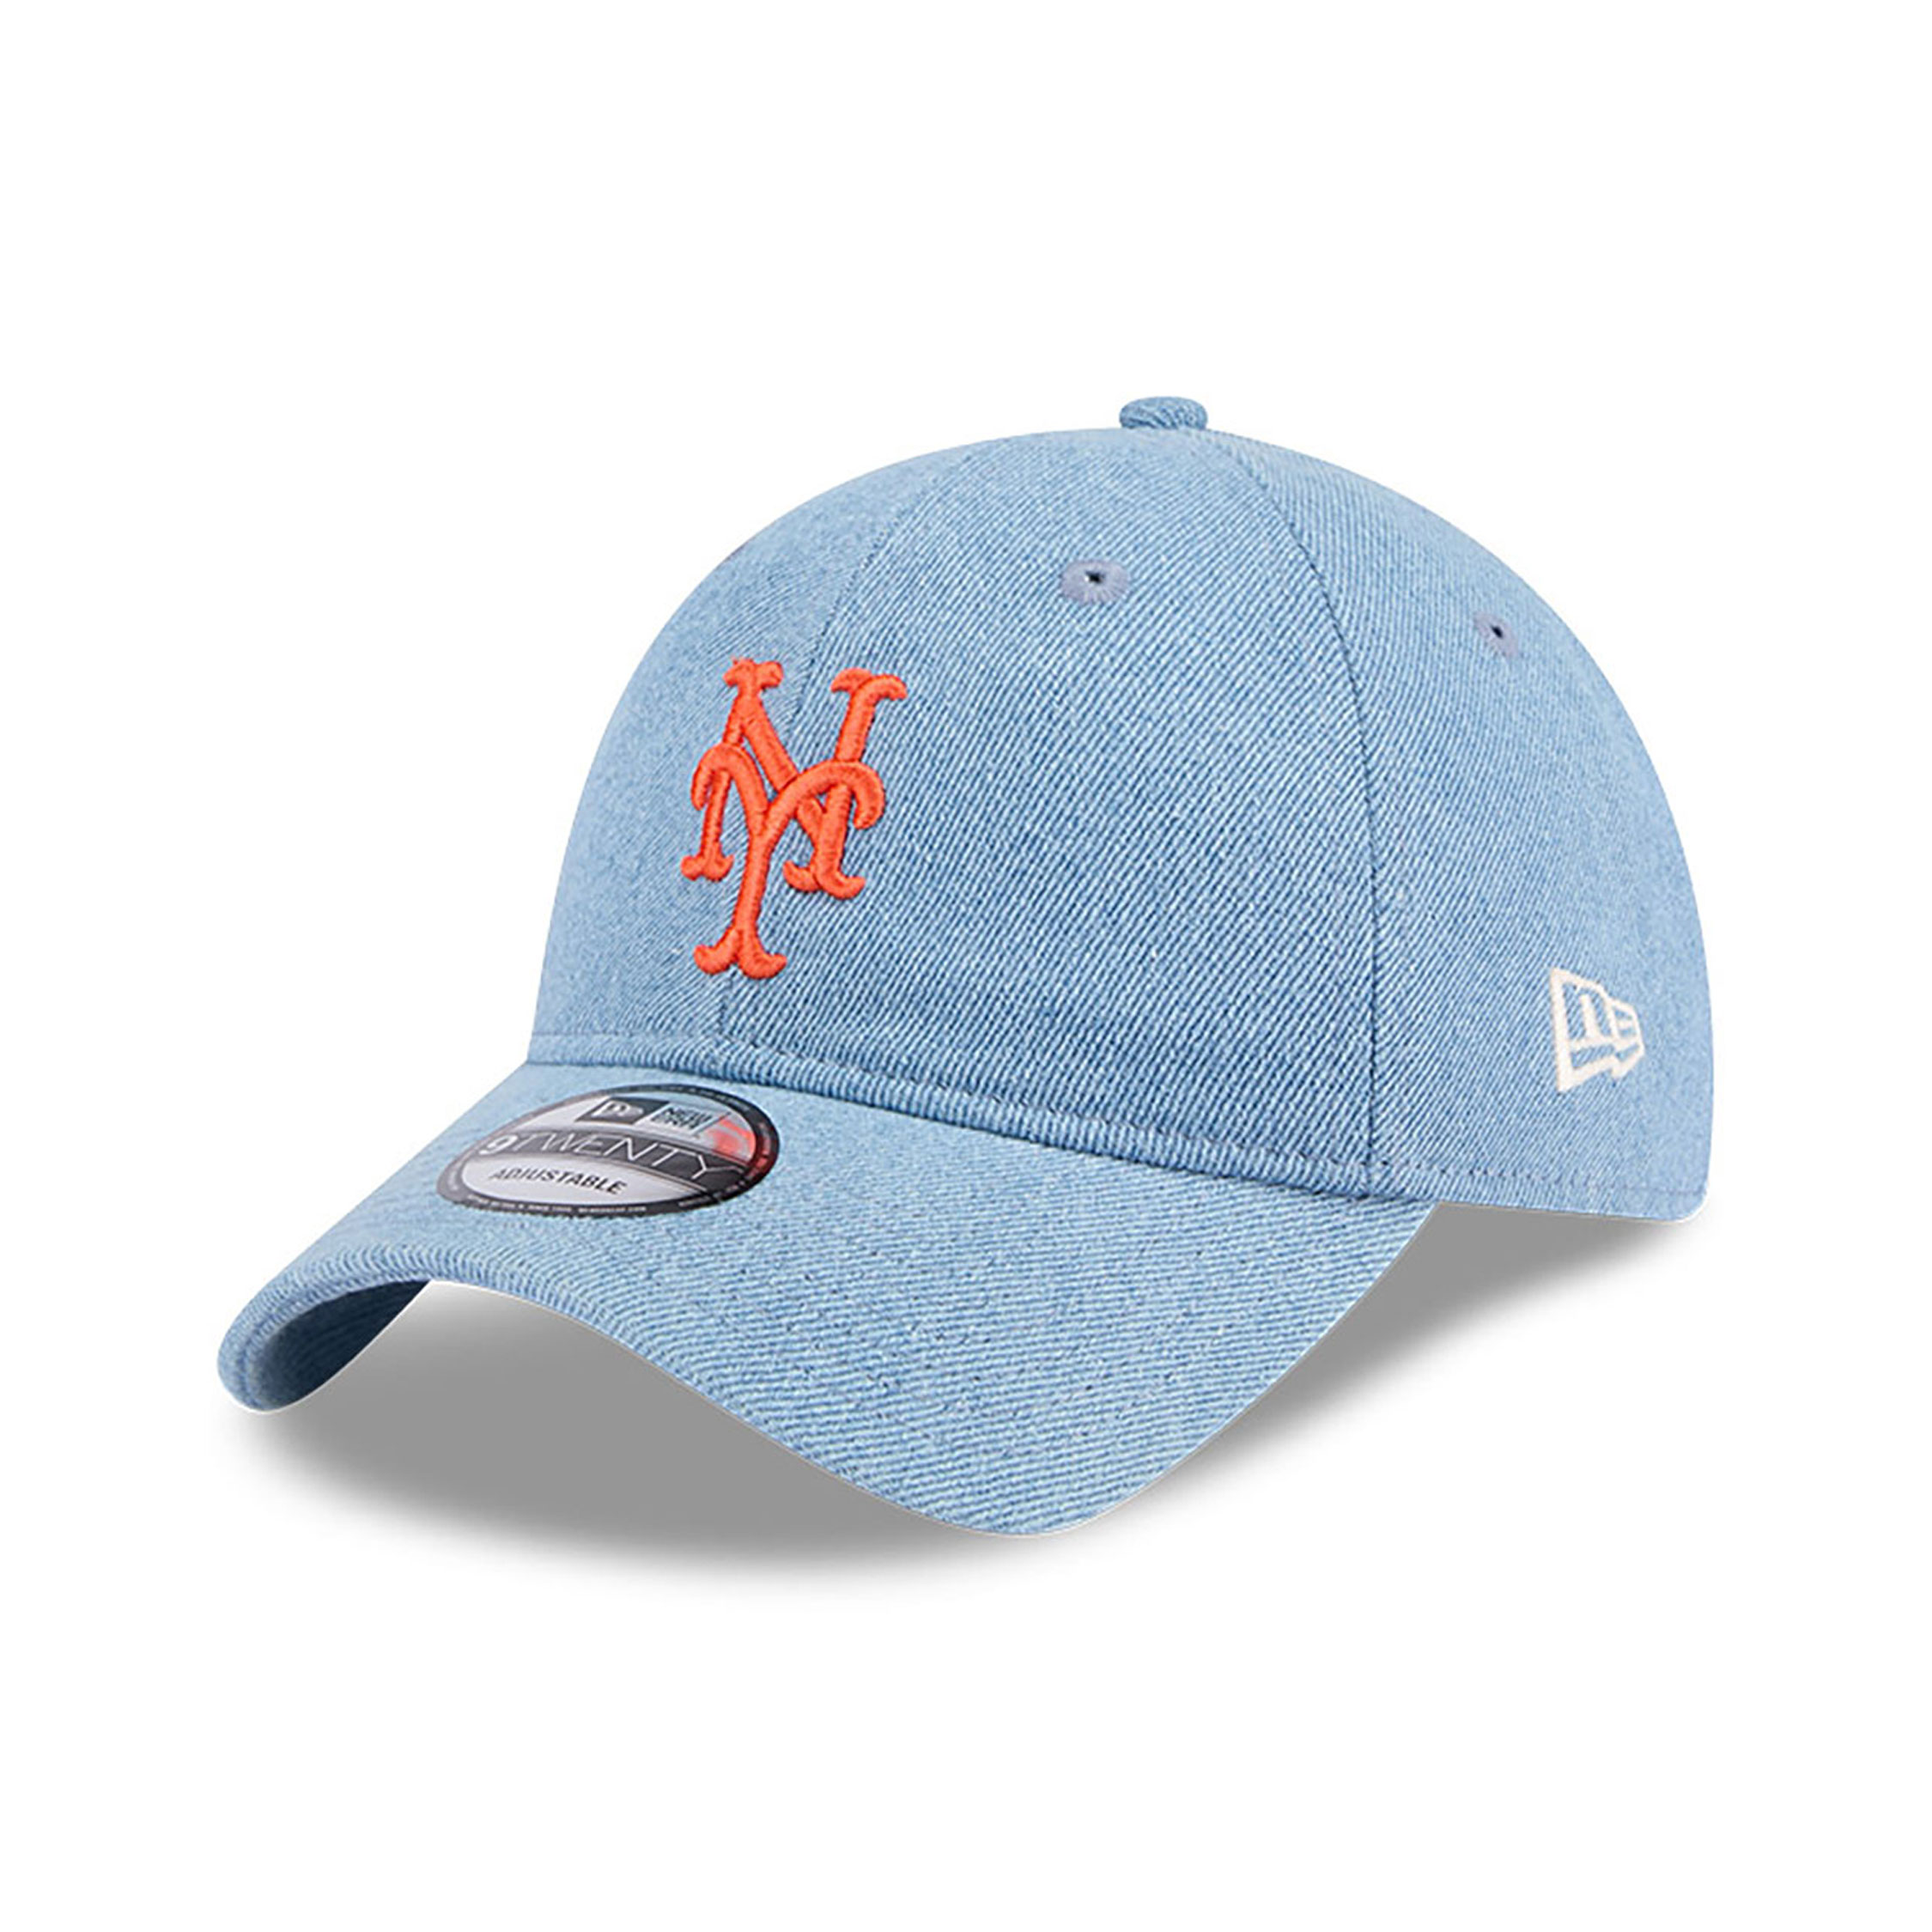 New York Mets Washed Denim Light Blue 9TWENTY Adjustable Cap